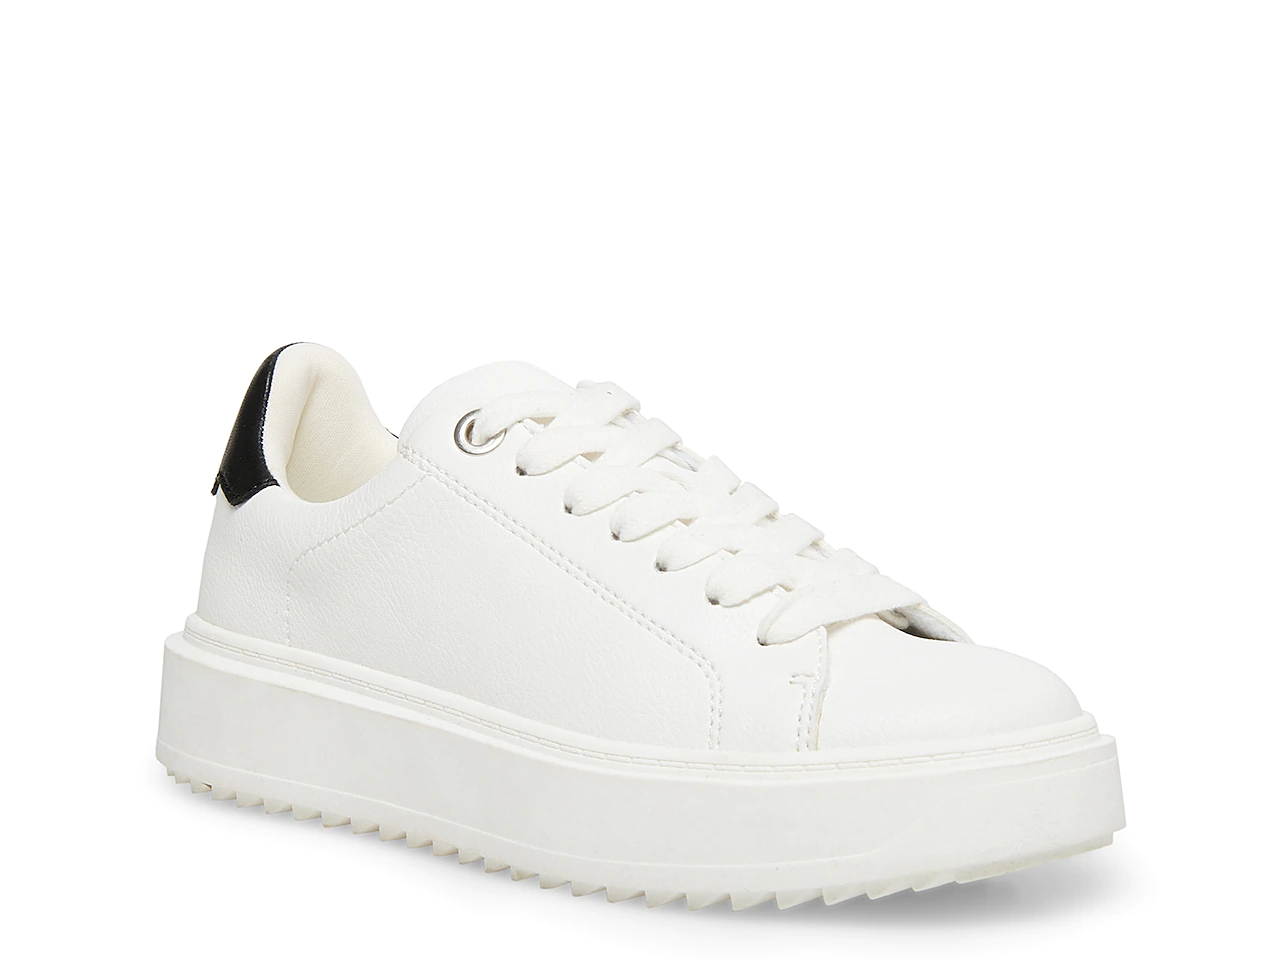 a white sneaker